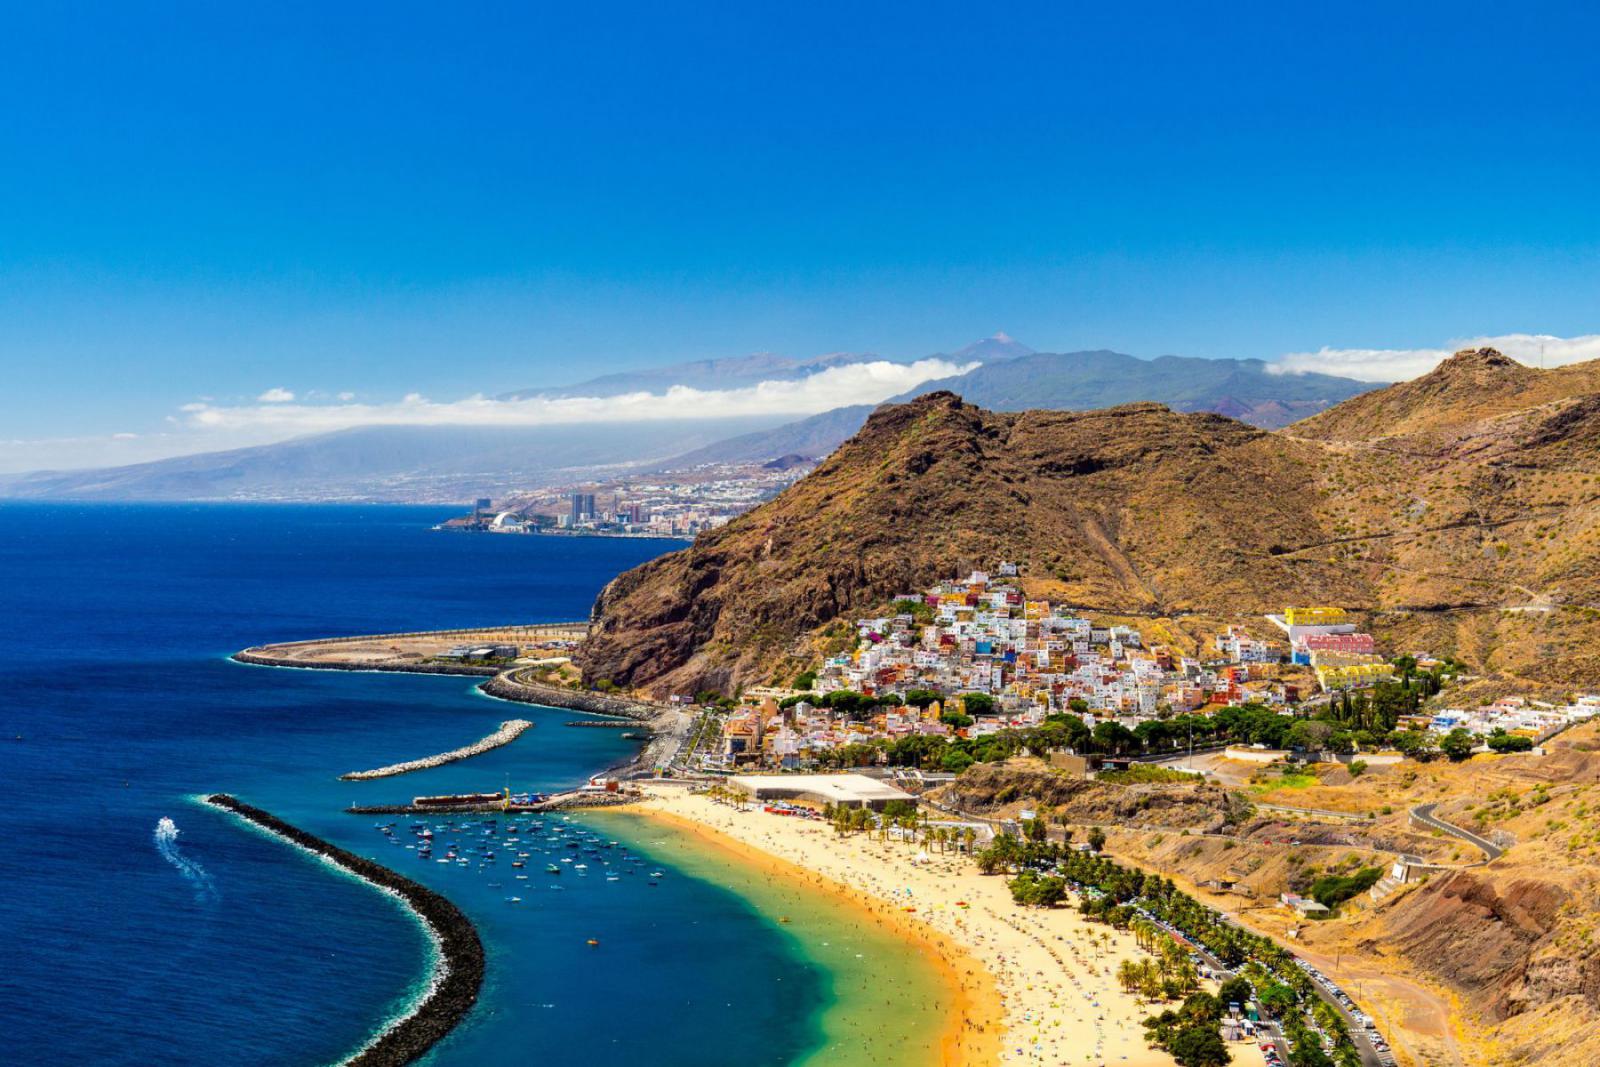 Carnaval vieren in de zon? Dat kan op Tenerife! | iStock - DaLui